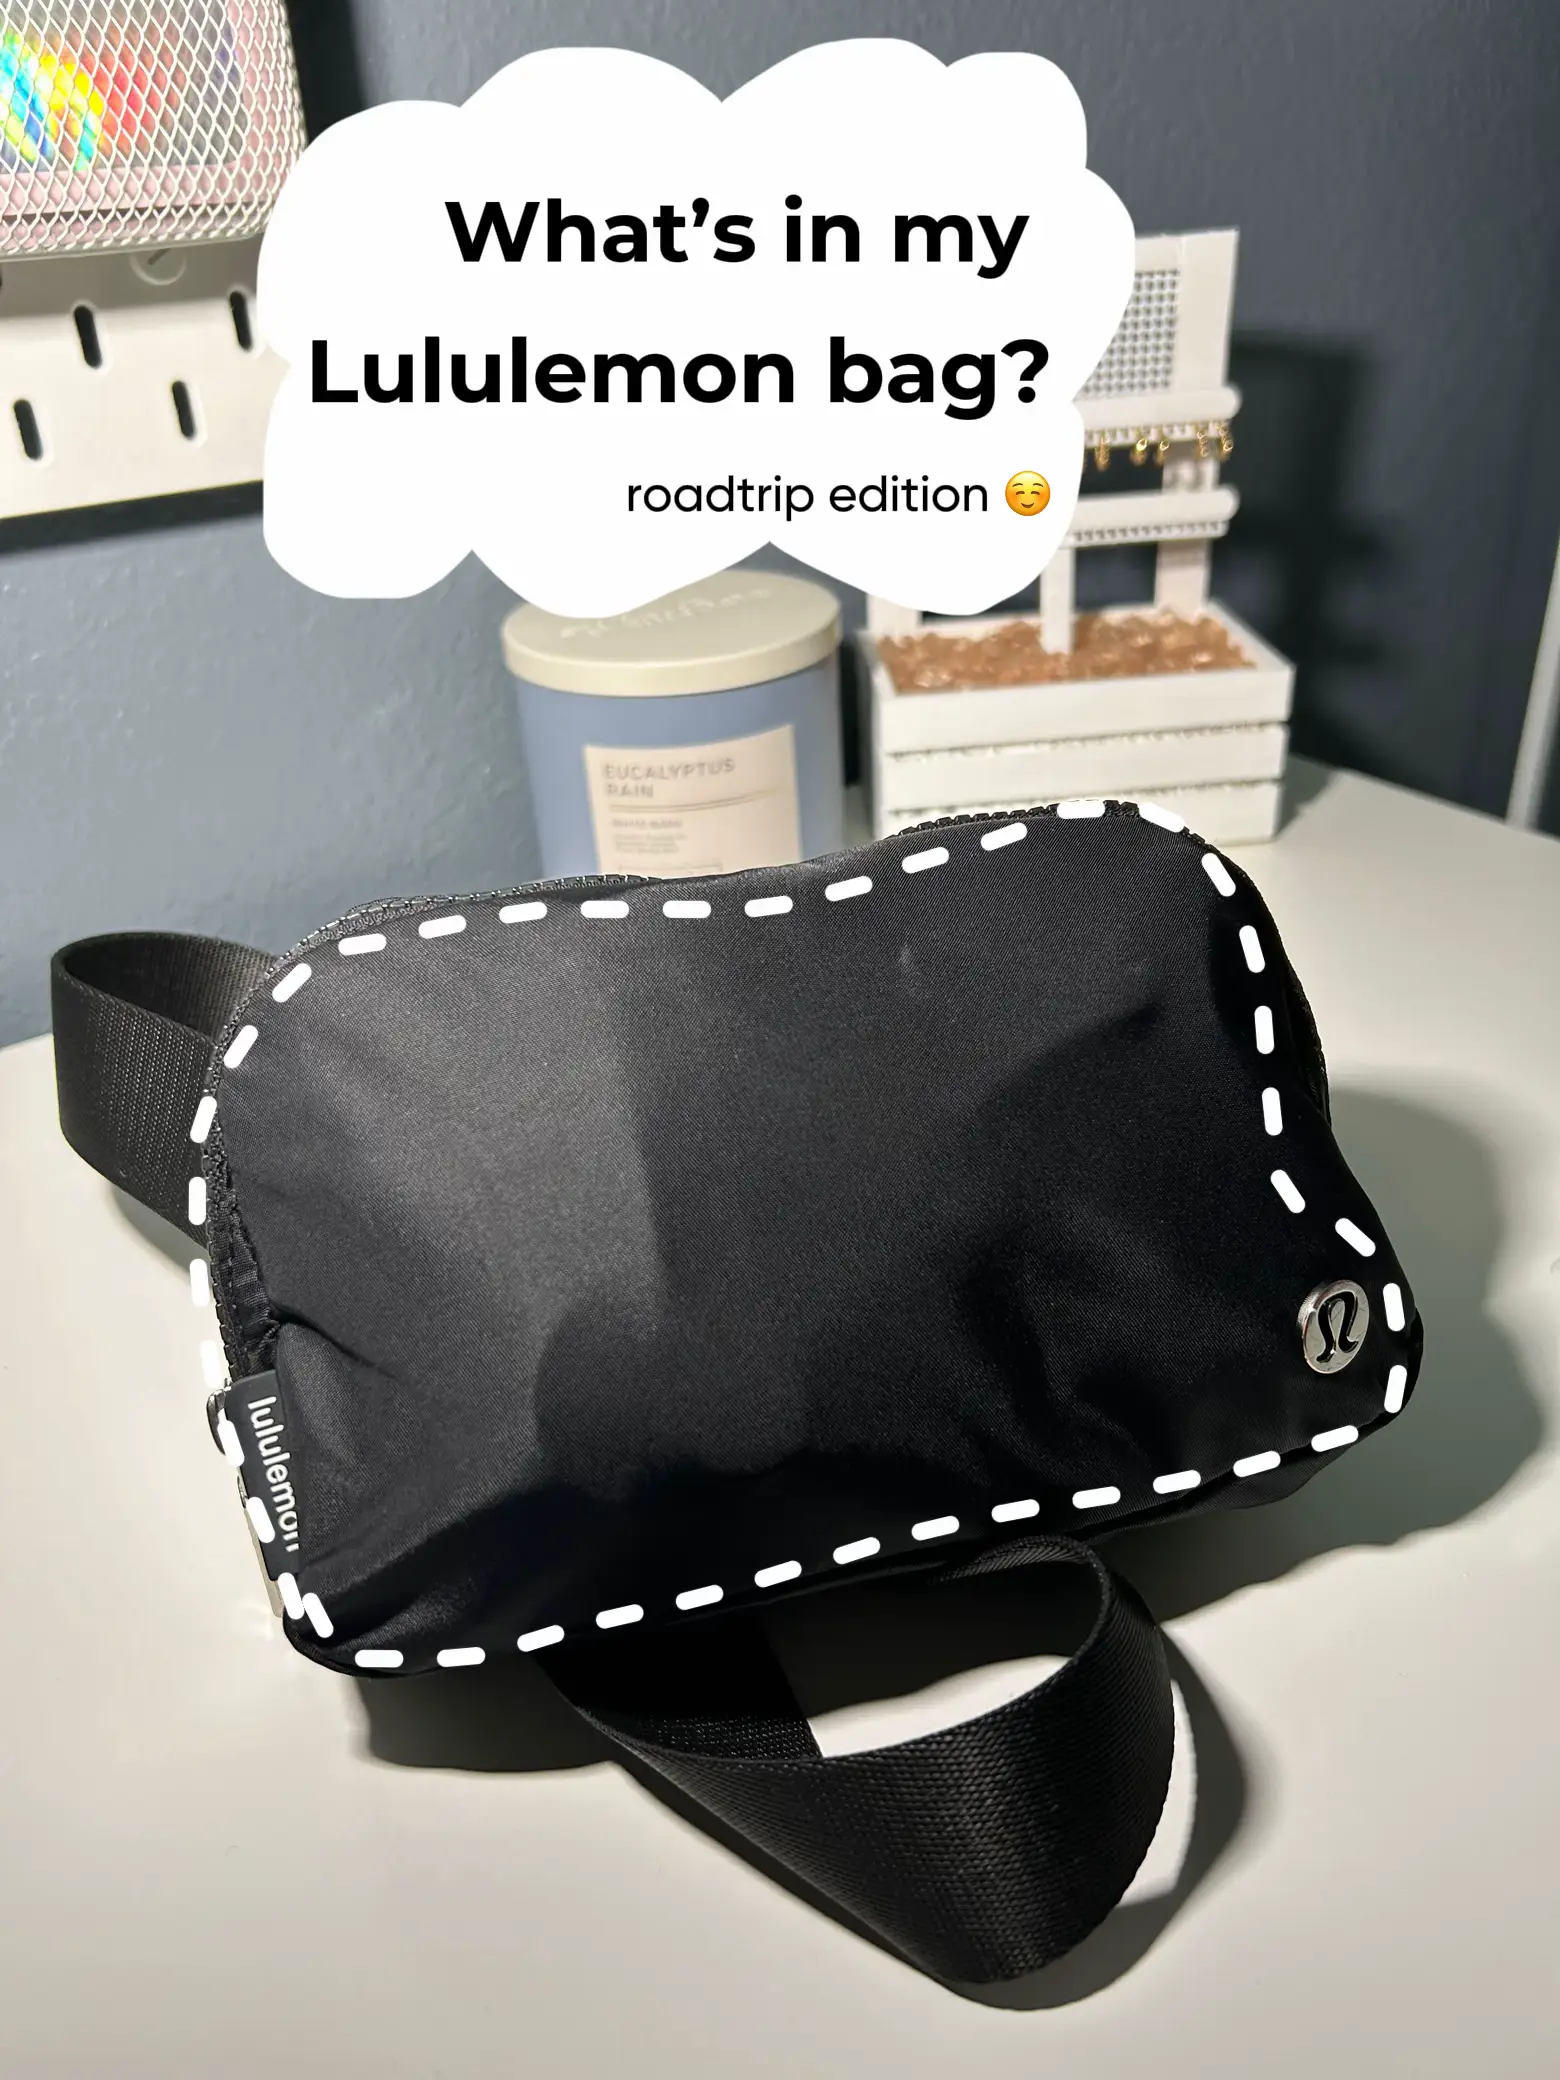 So excited for my new lunch bag y'all! #lululemon#lululemonbeltbag#bel